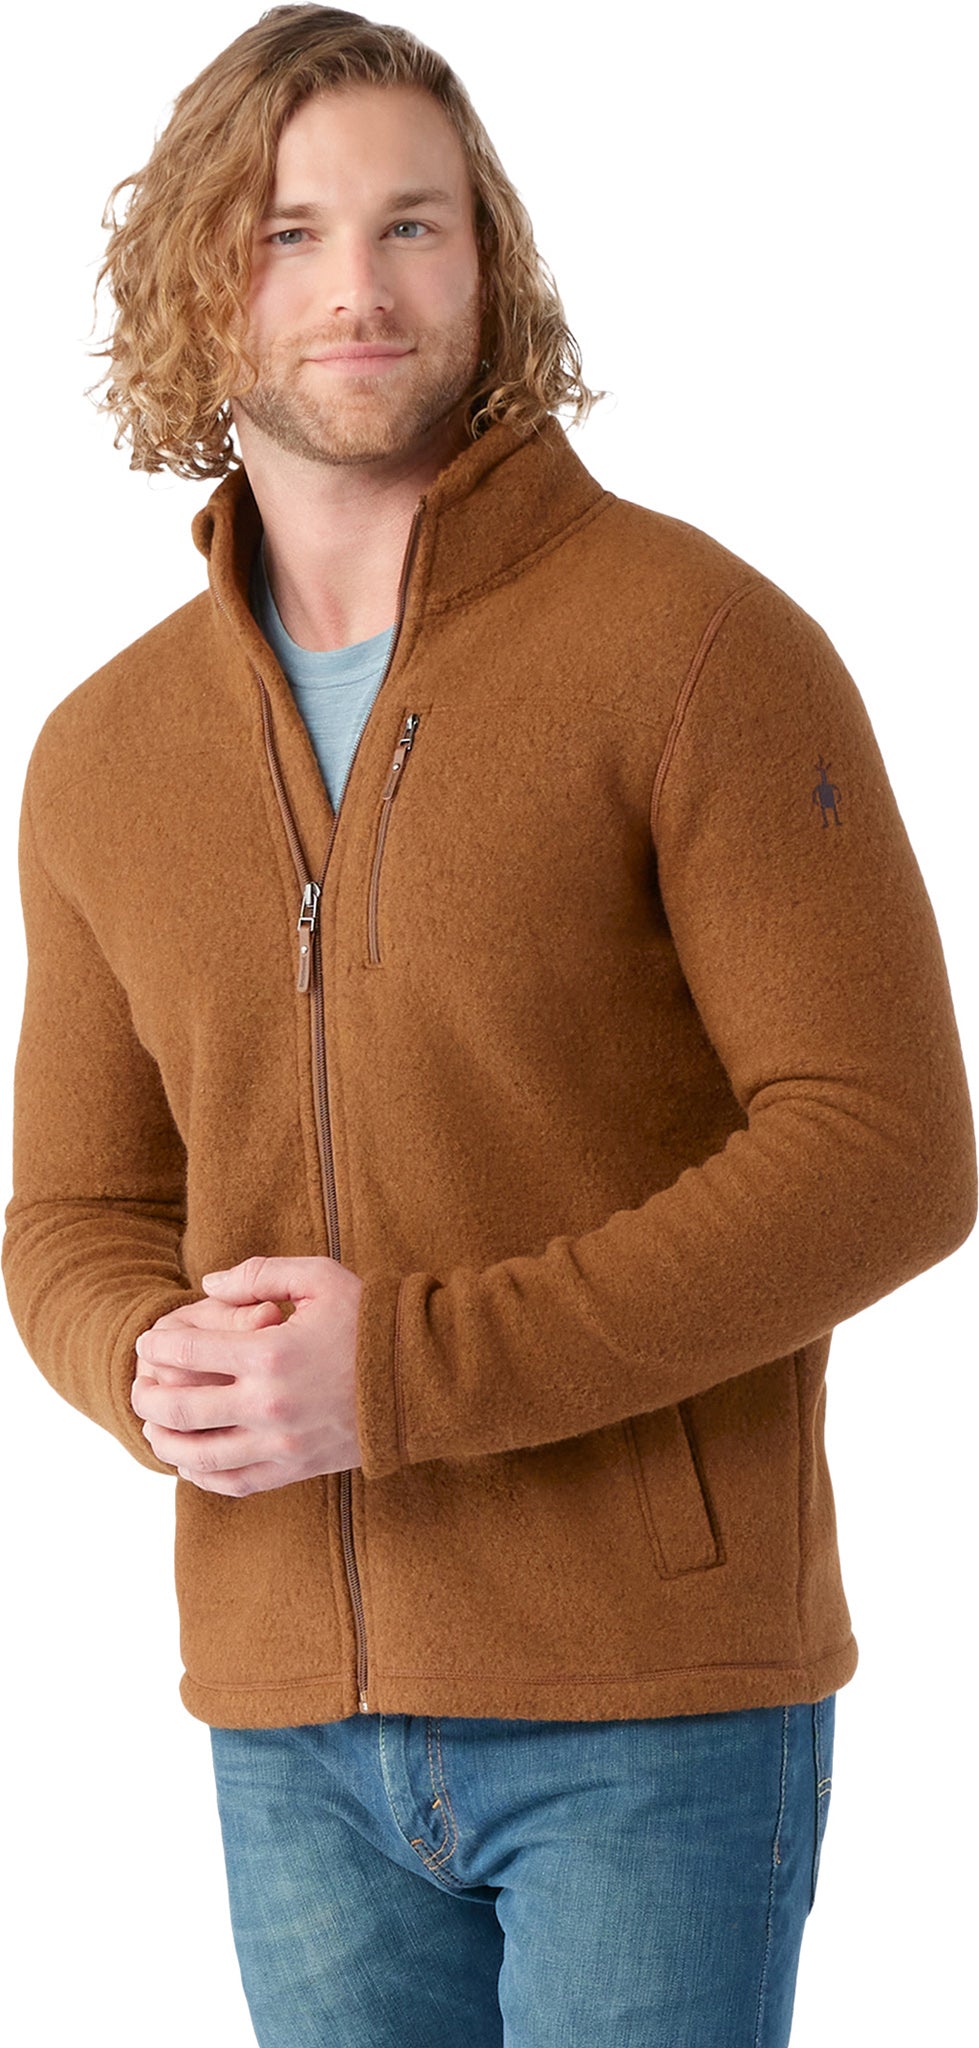 Smartwool Hudson Trail Fleece 1/2 Zip Sweater